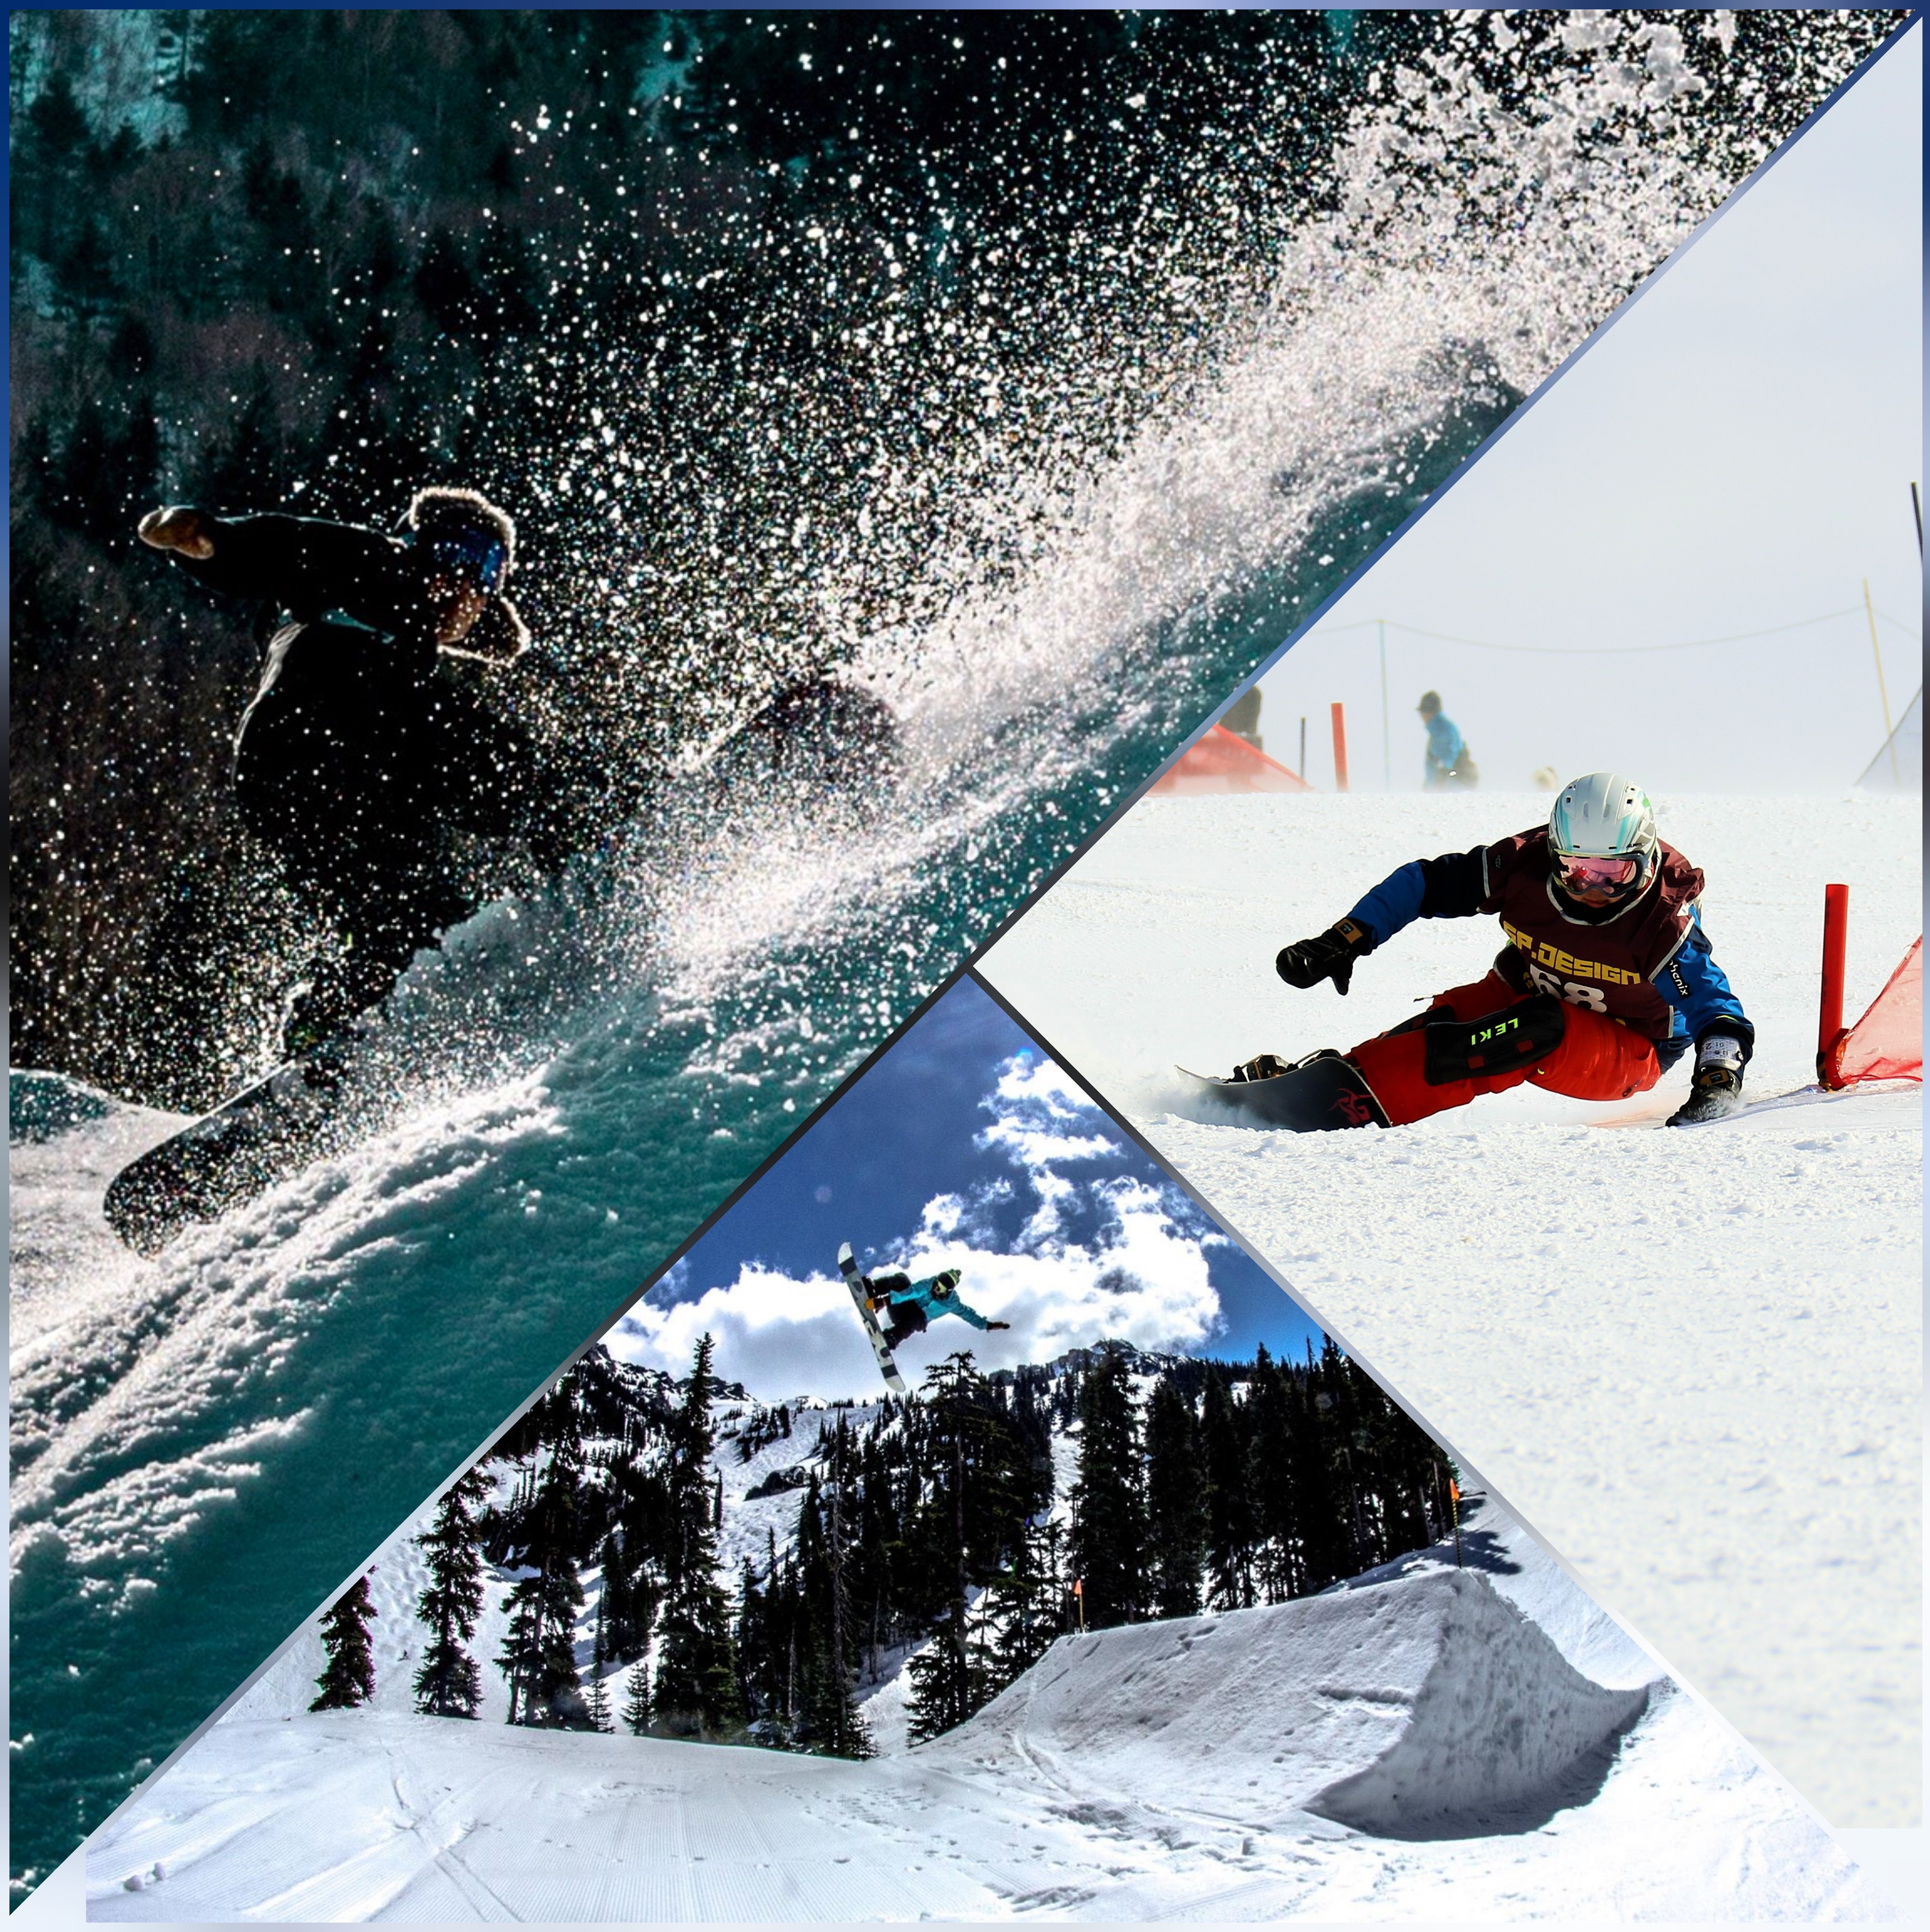 スノーボード、スキーのワックス | マツモトワックス MATSUMOTOWAX official website